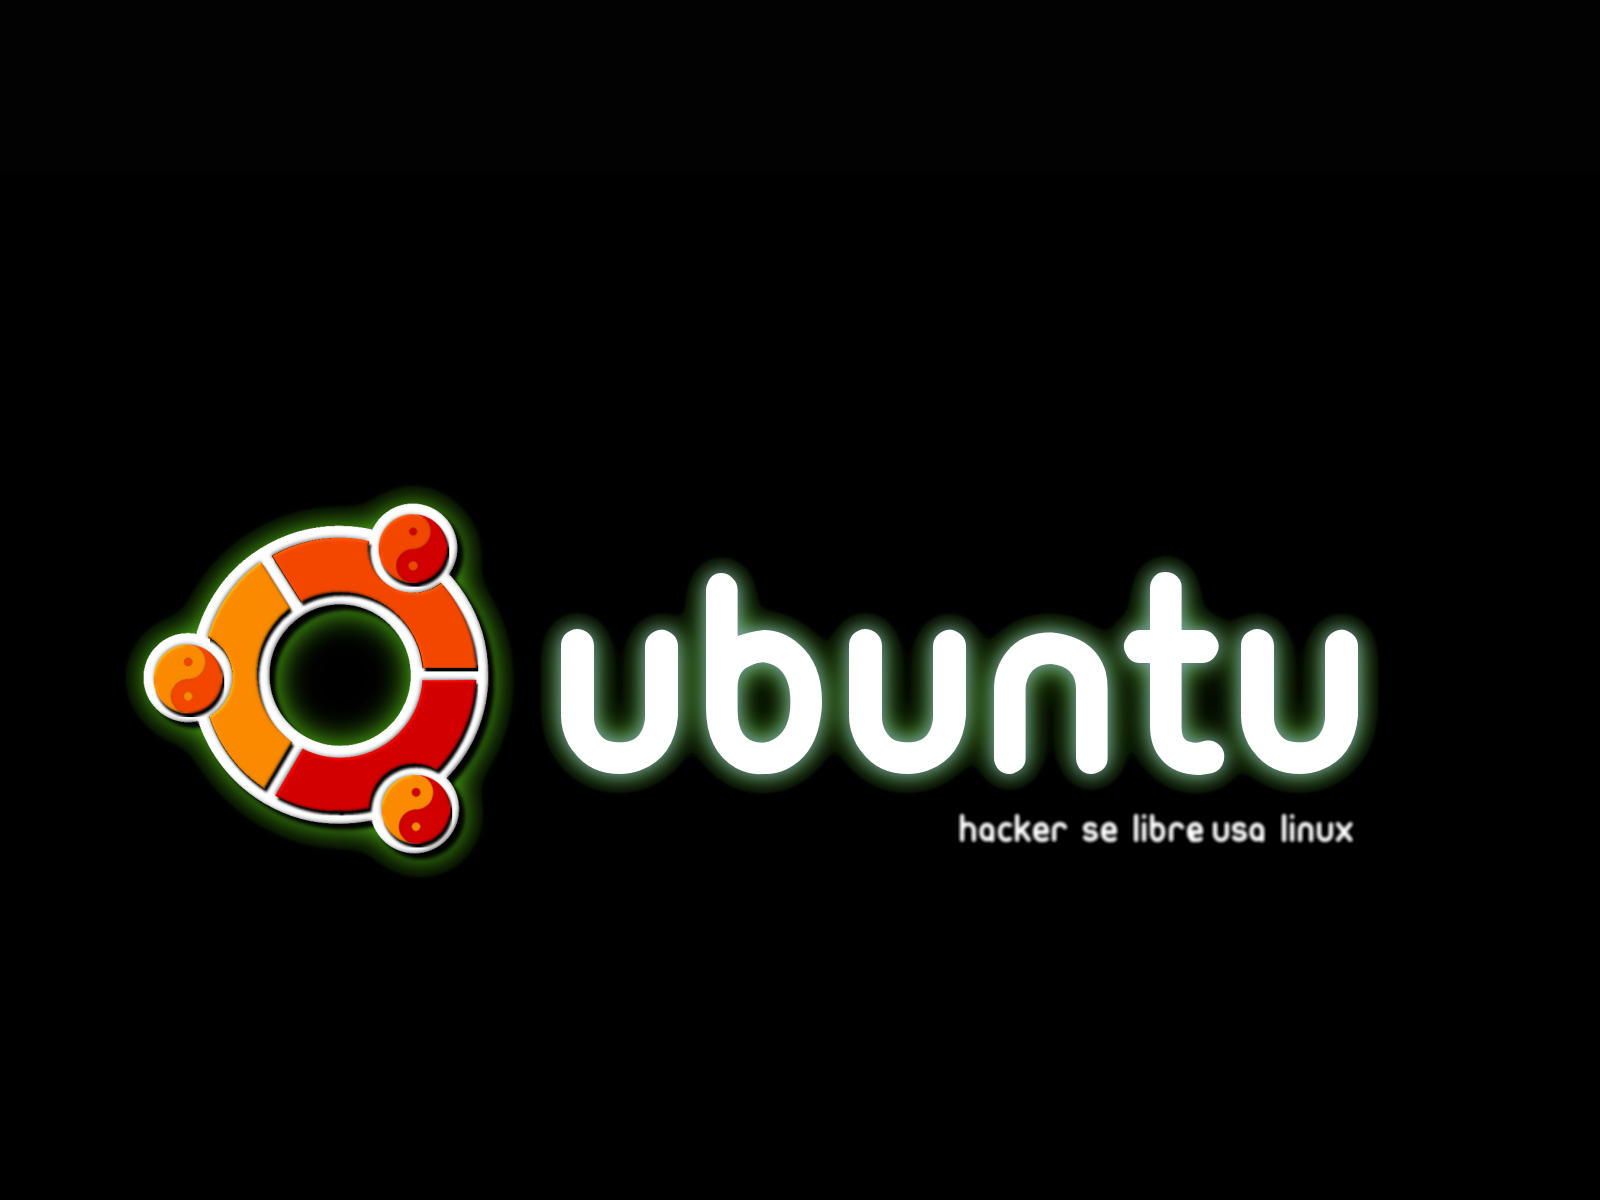 ảnh nền đẹp cho ubuntu